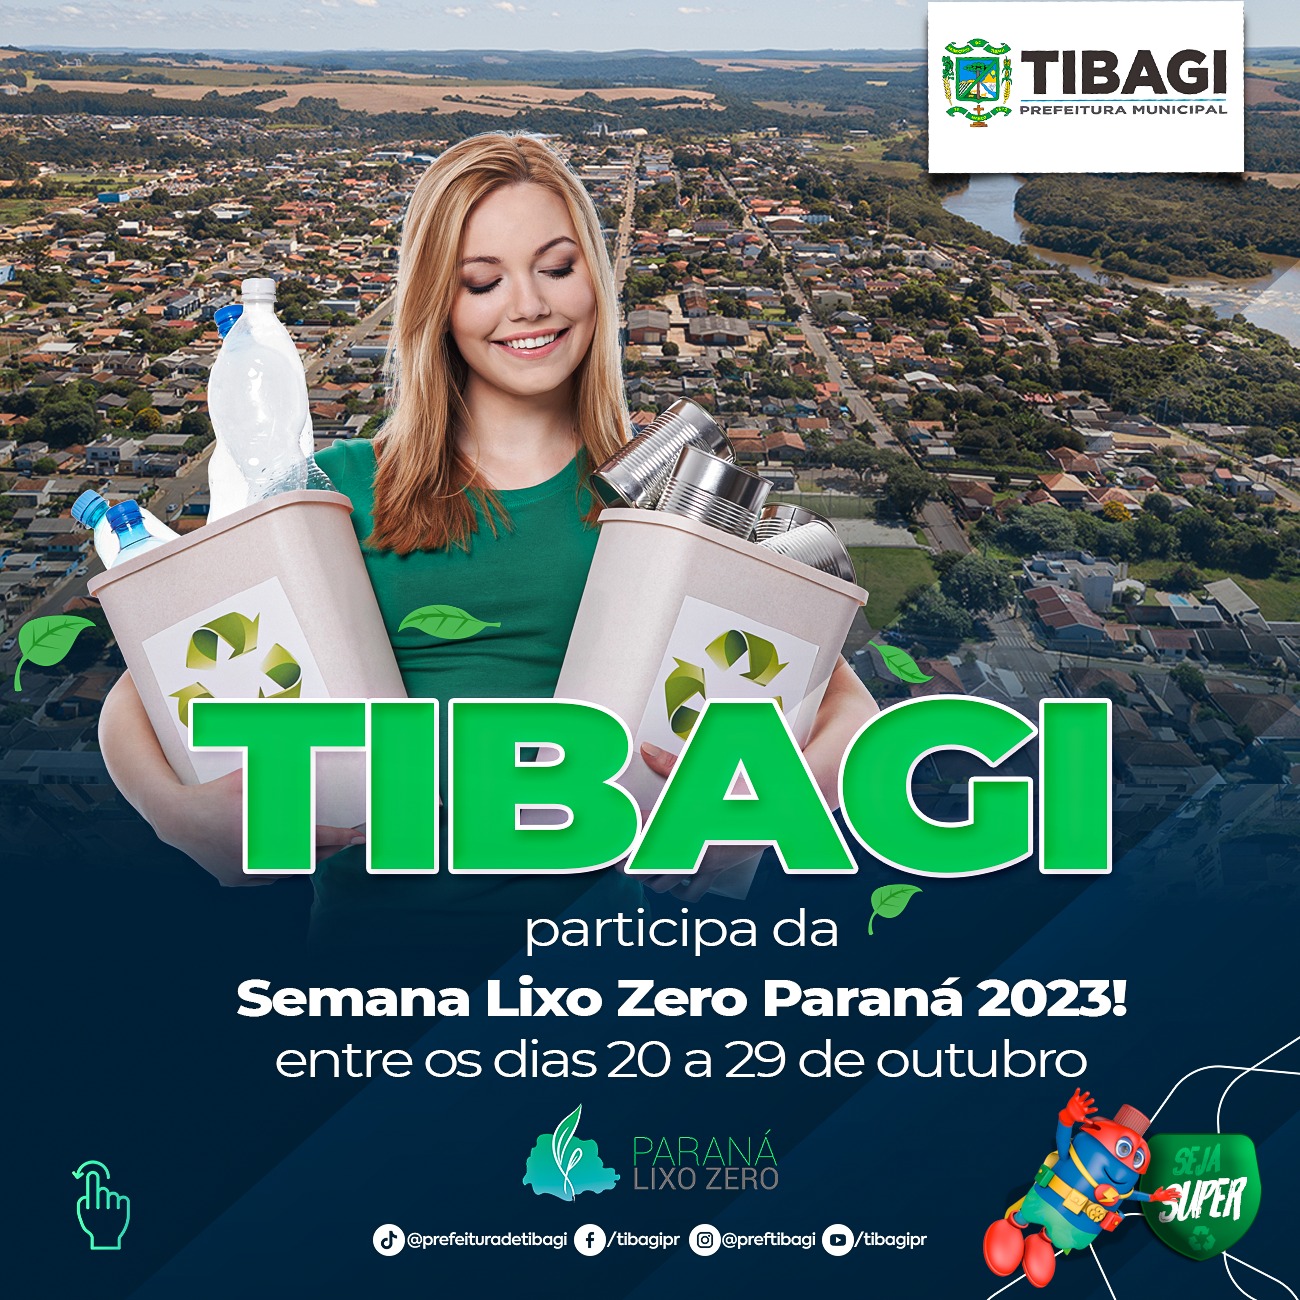 Tibagi participa da Semana Lixo Zero Paraná 2023